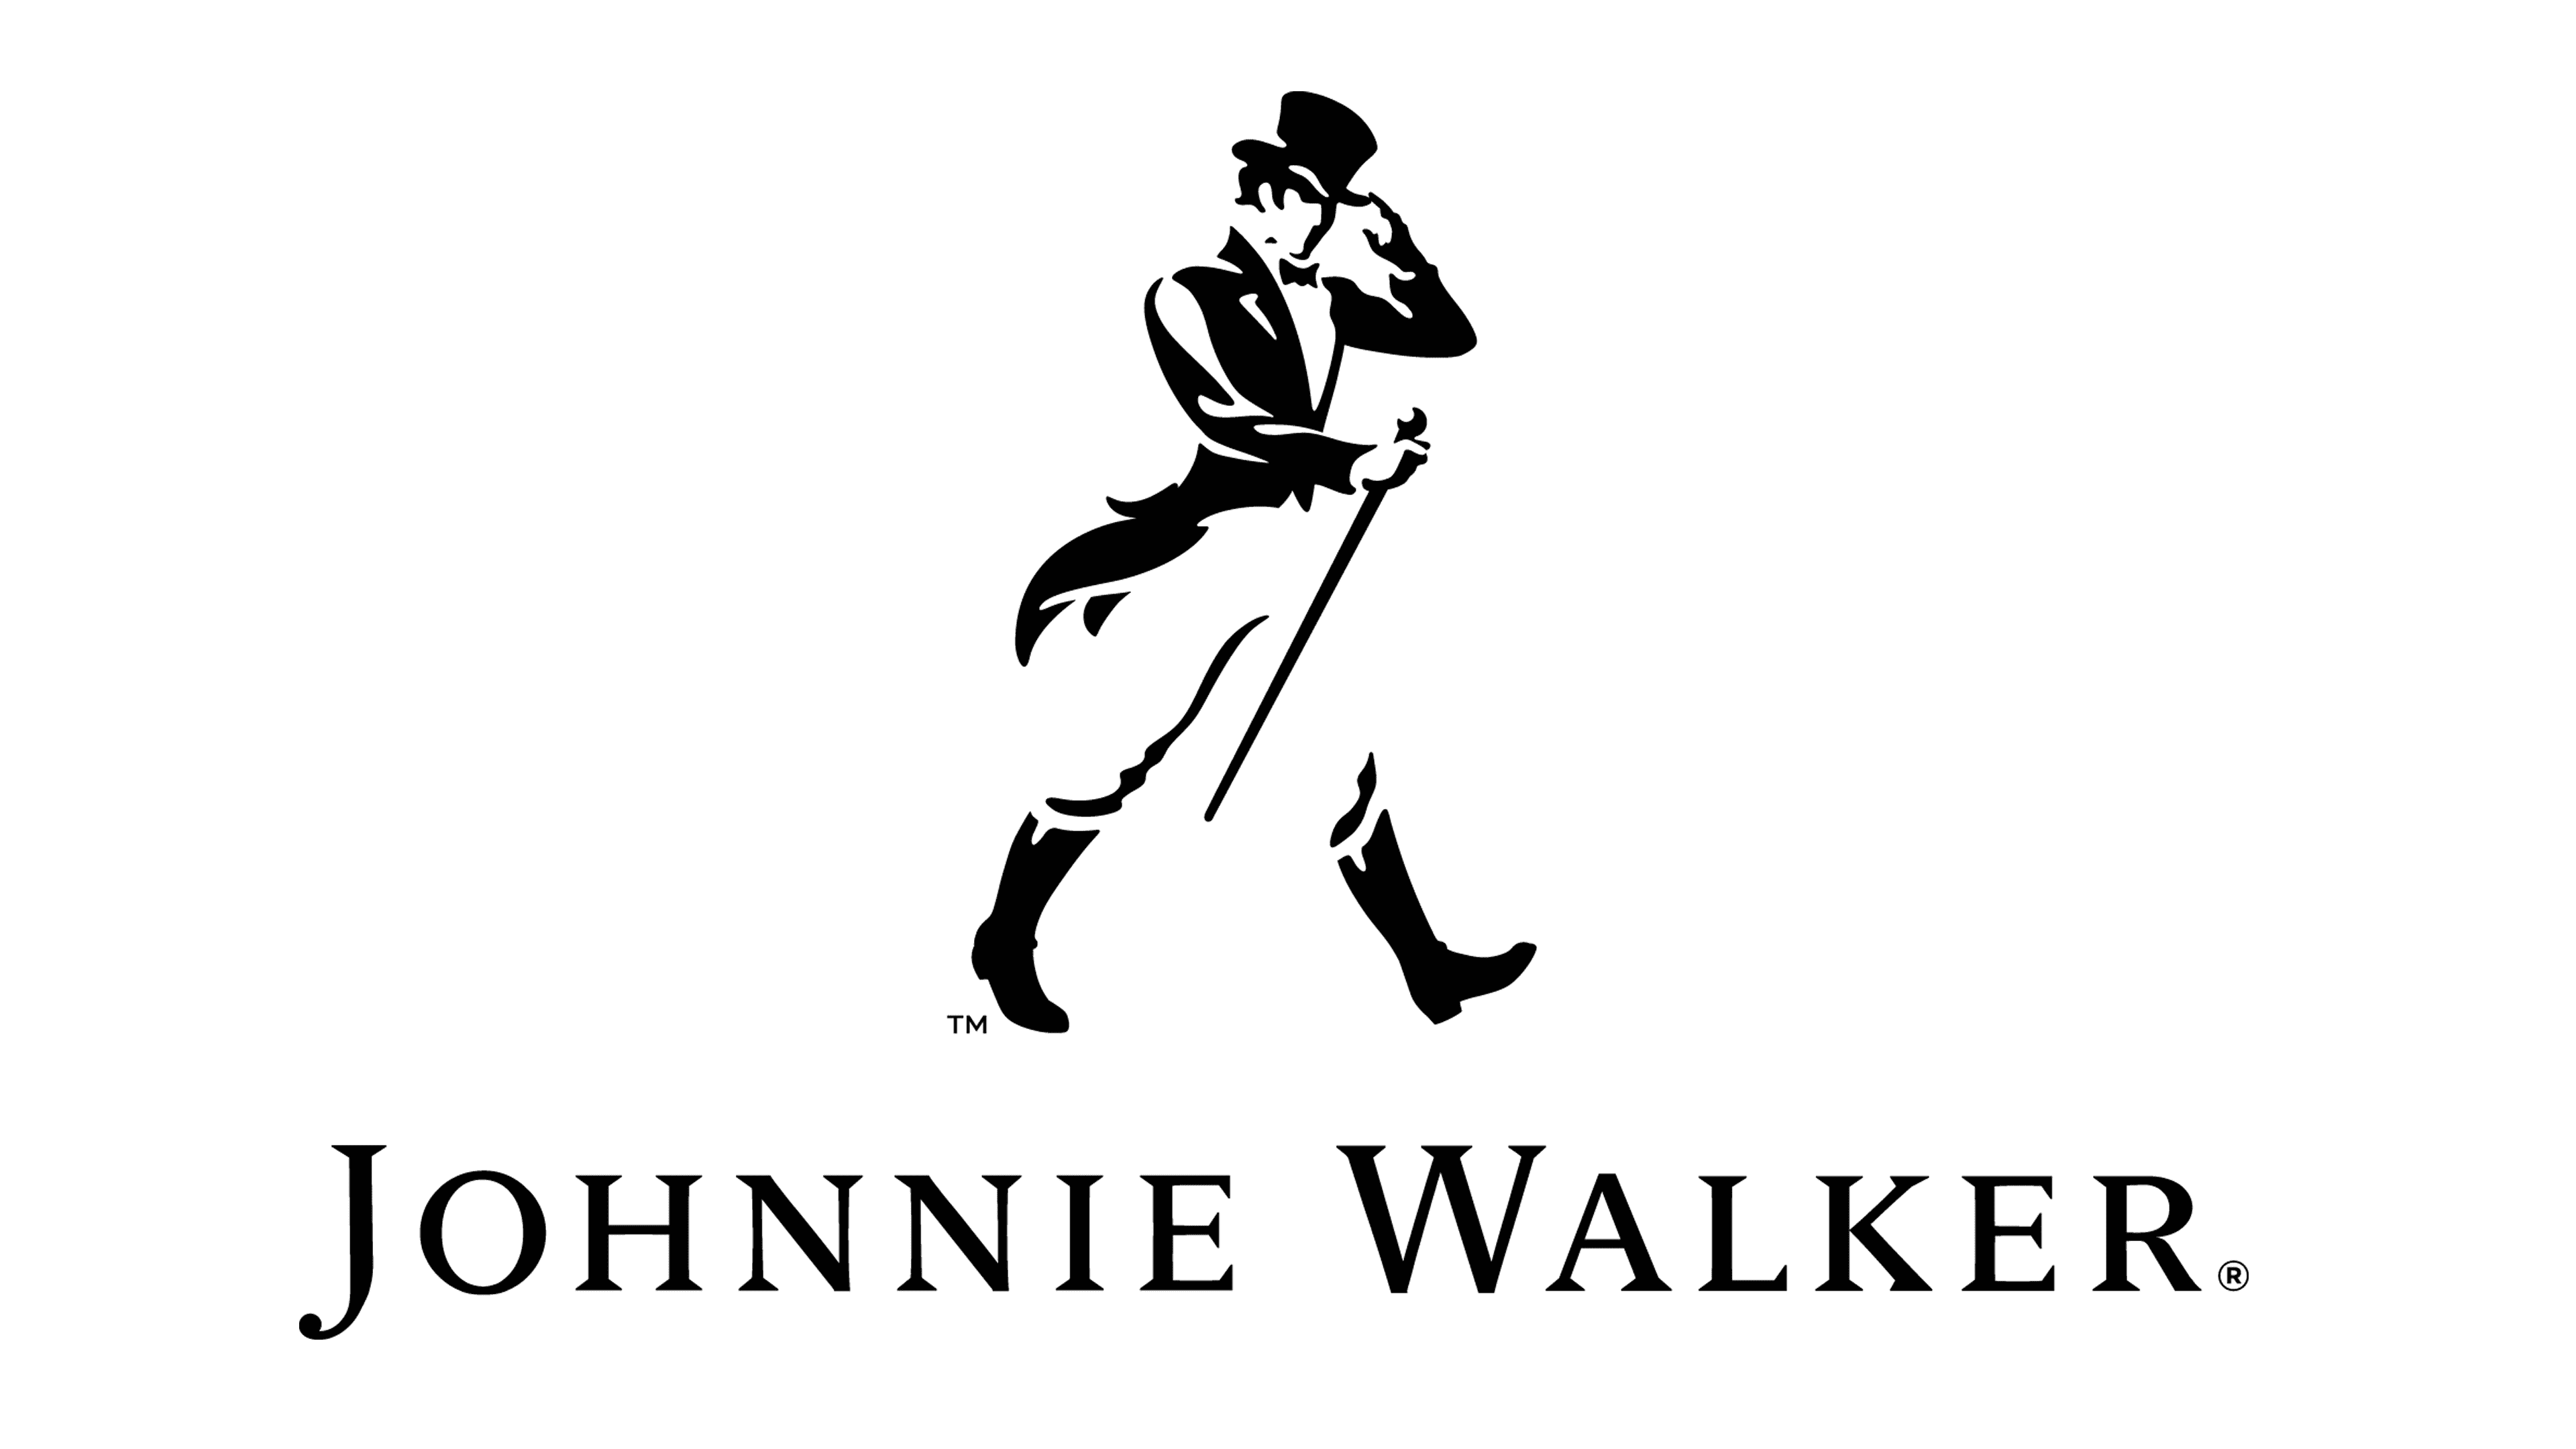 Johnnie Walker PNG Image Transparent Background